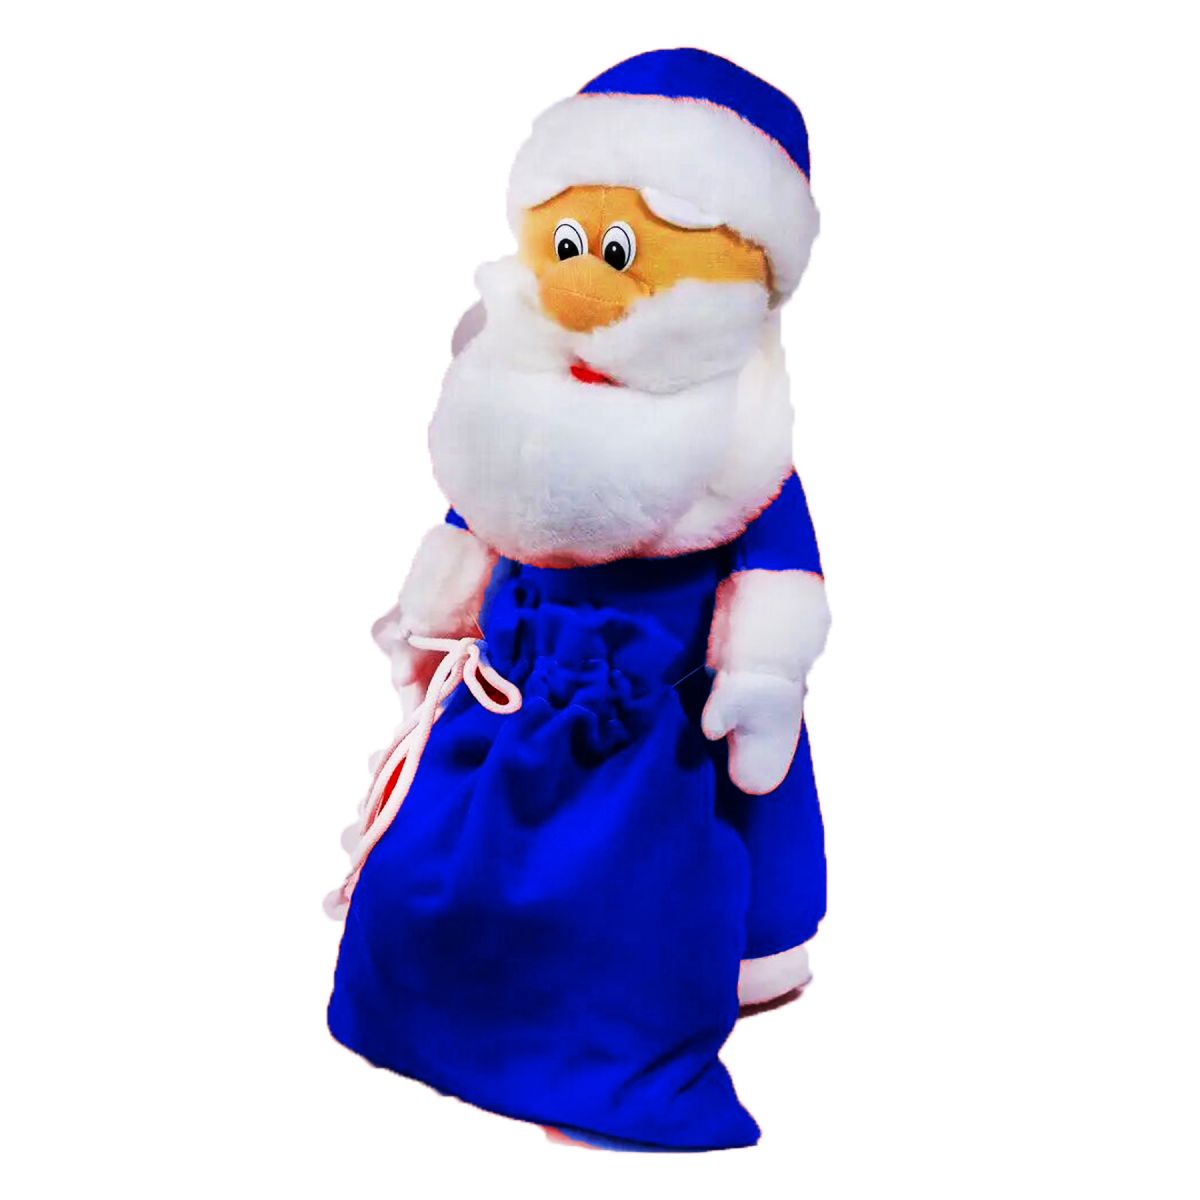 М'яка іграшка "Санта Клаус" в синьому